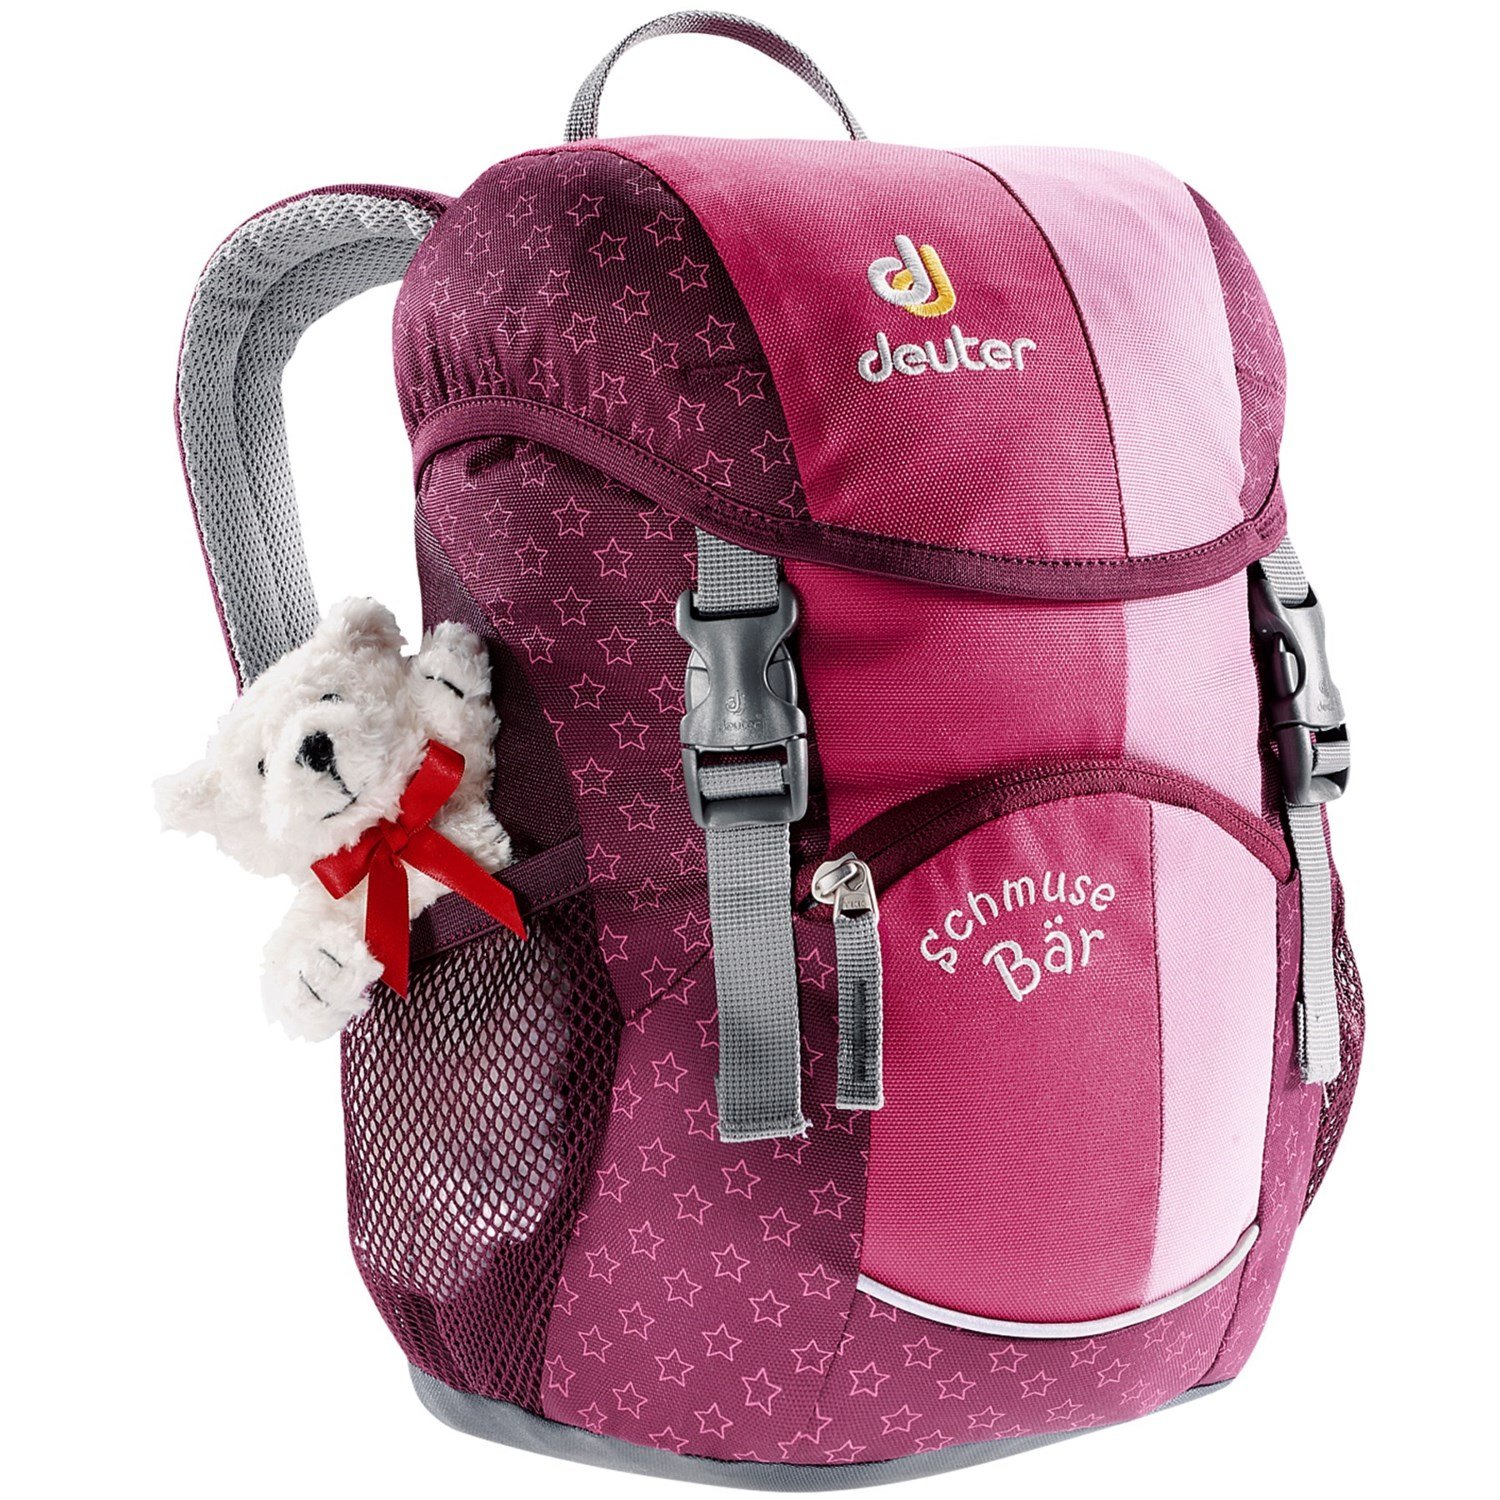 Велосипедный рюкзак Deuter Schmusebar, детский, 34х20х16, 8 л, розовый, 36003_5040 отражатель godox rft 09 80 см просветный